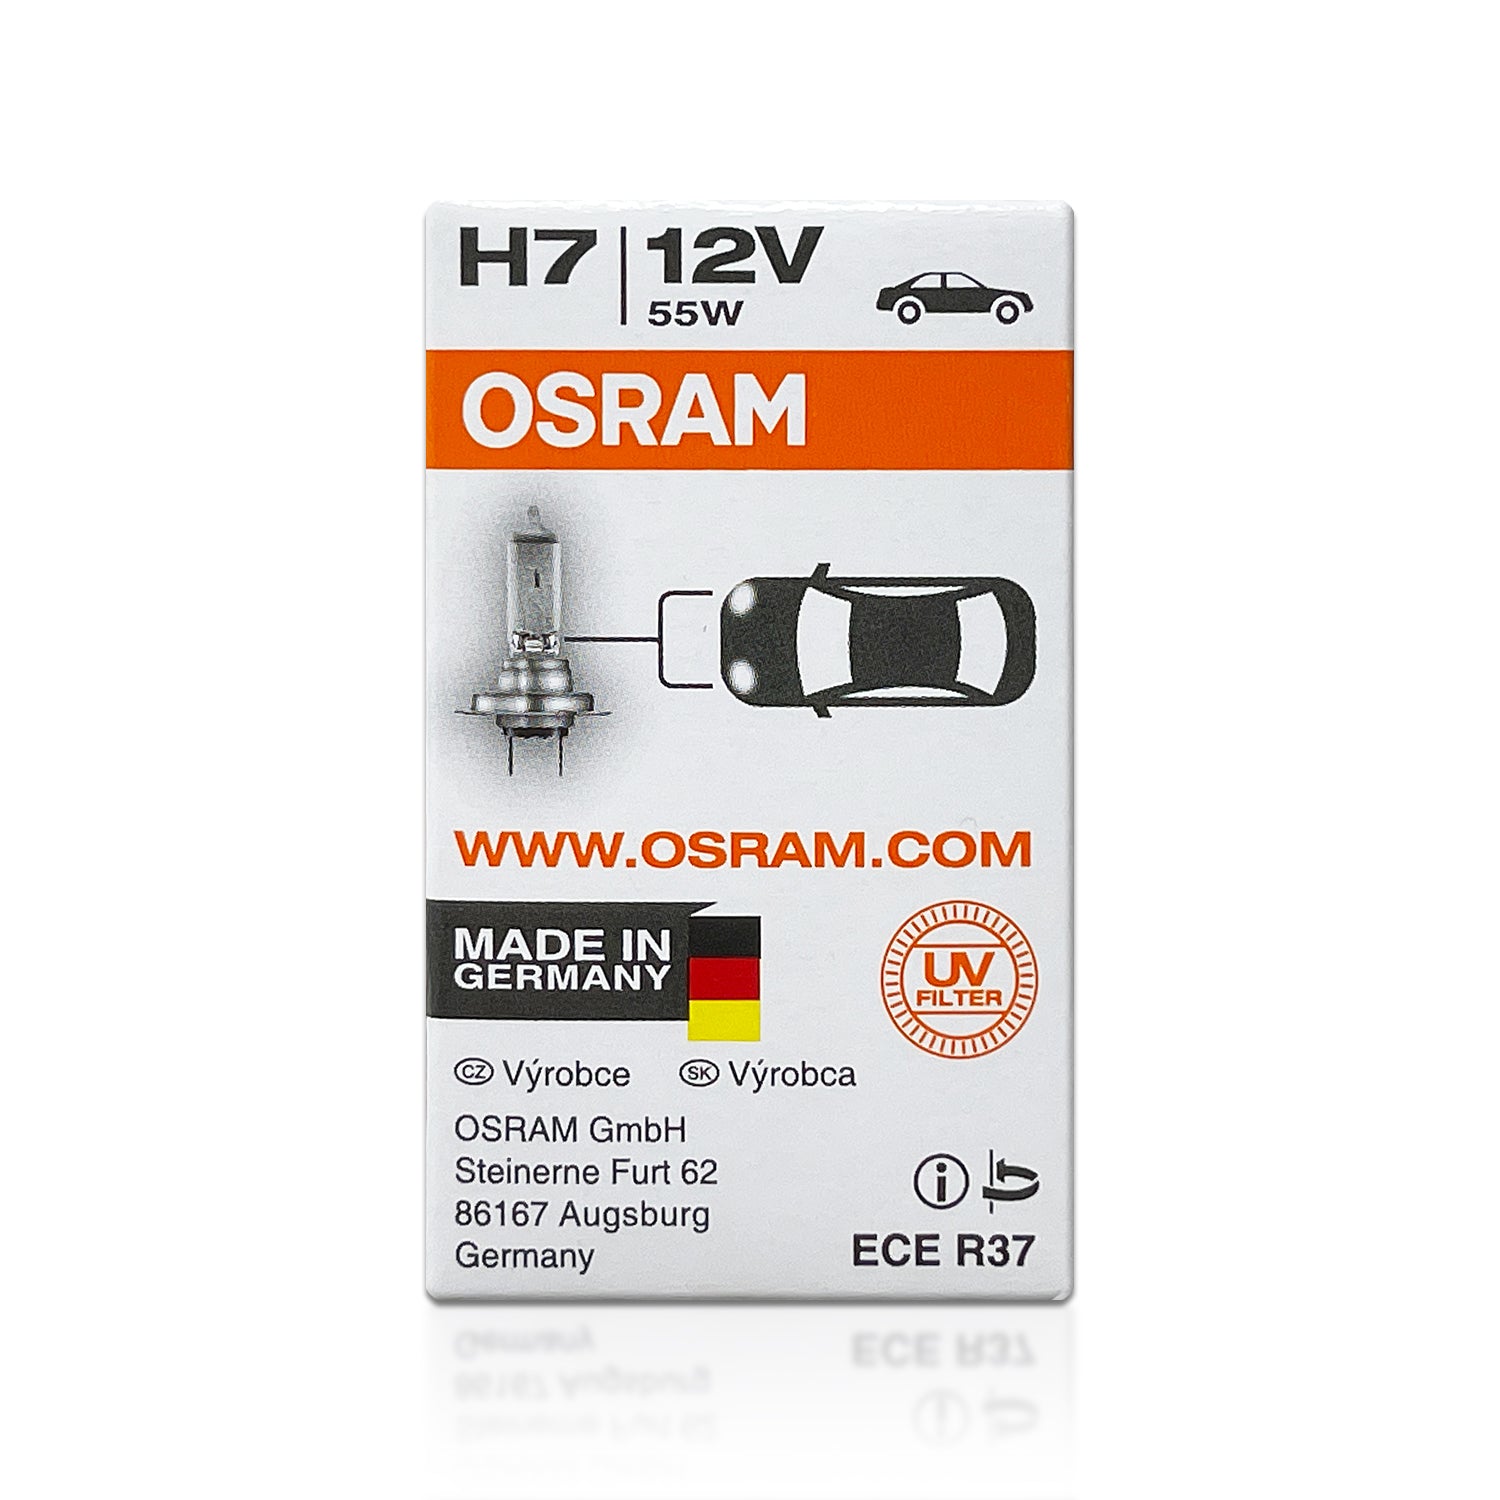 Pack X 2 Lamparas H7 12v 55w Osram Original Alemania